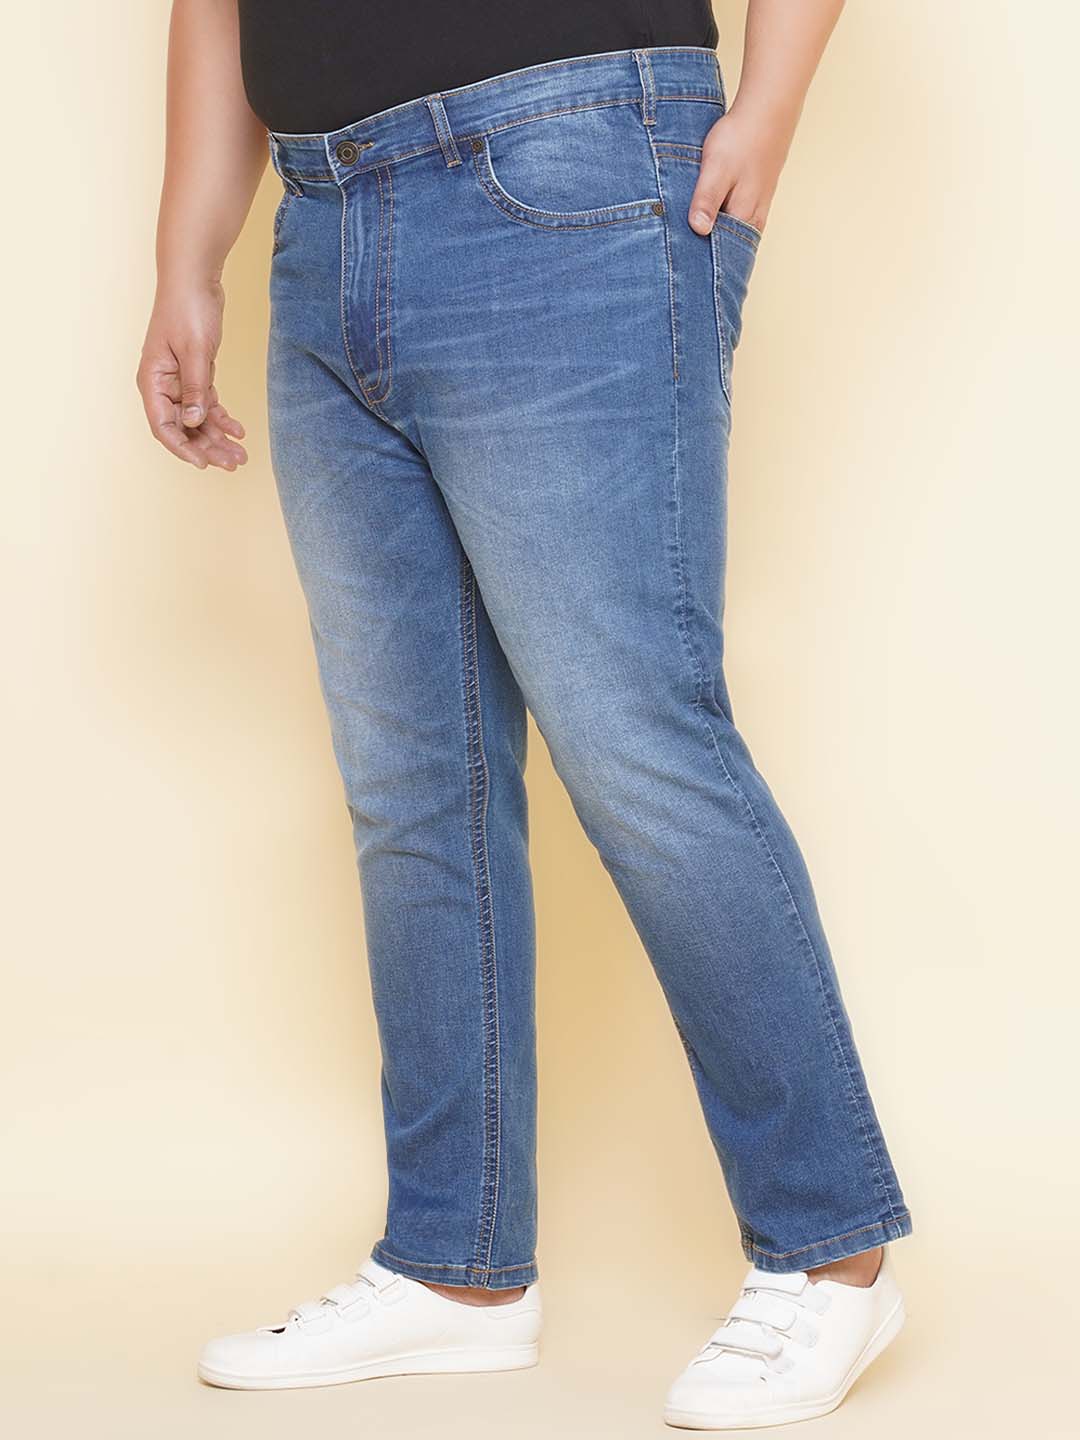 bottomwear/jeans/JPJ27098/jpj27098-4.jpg